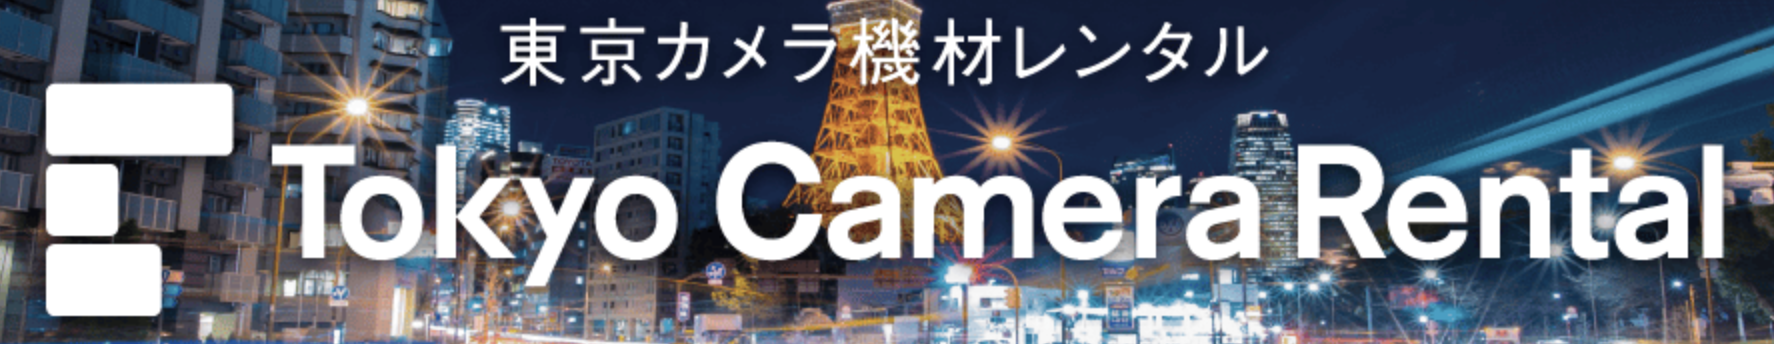 東京カメラ機材レンタルロゴ